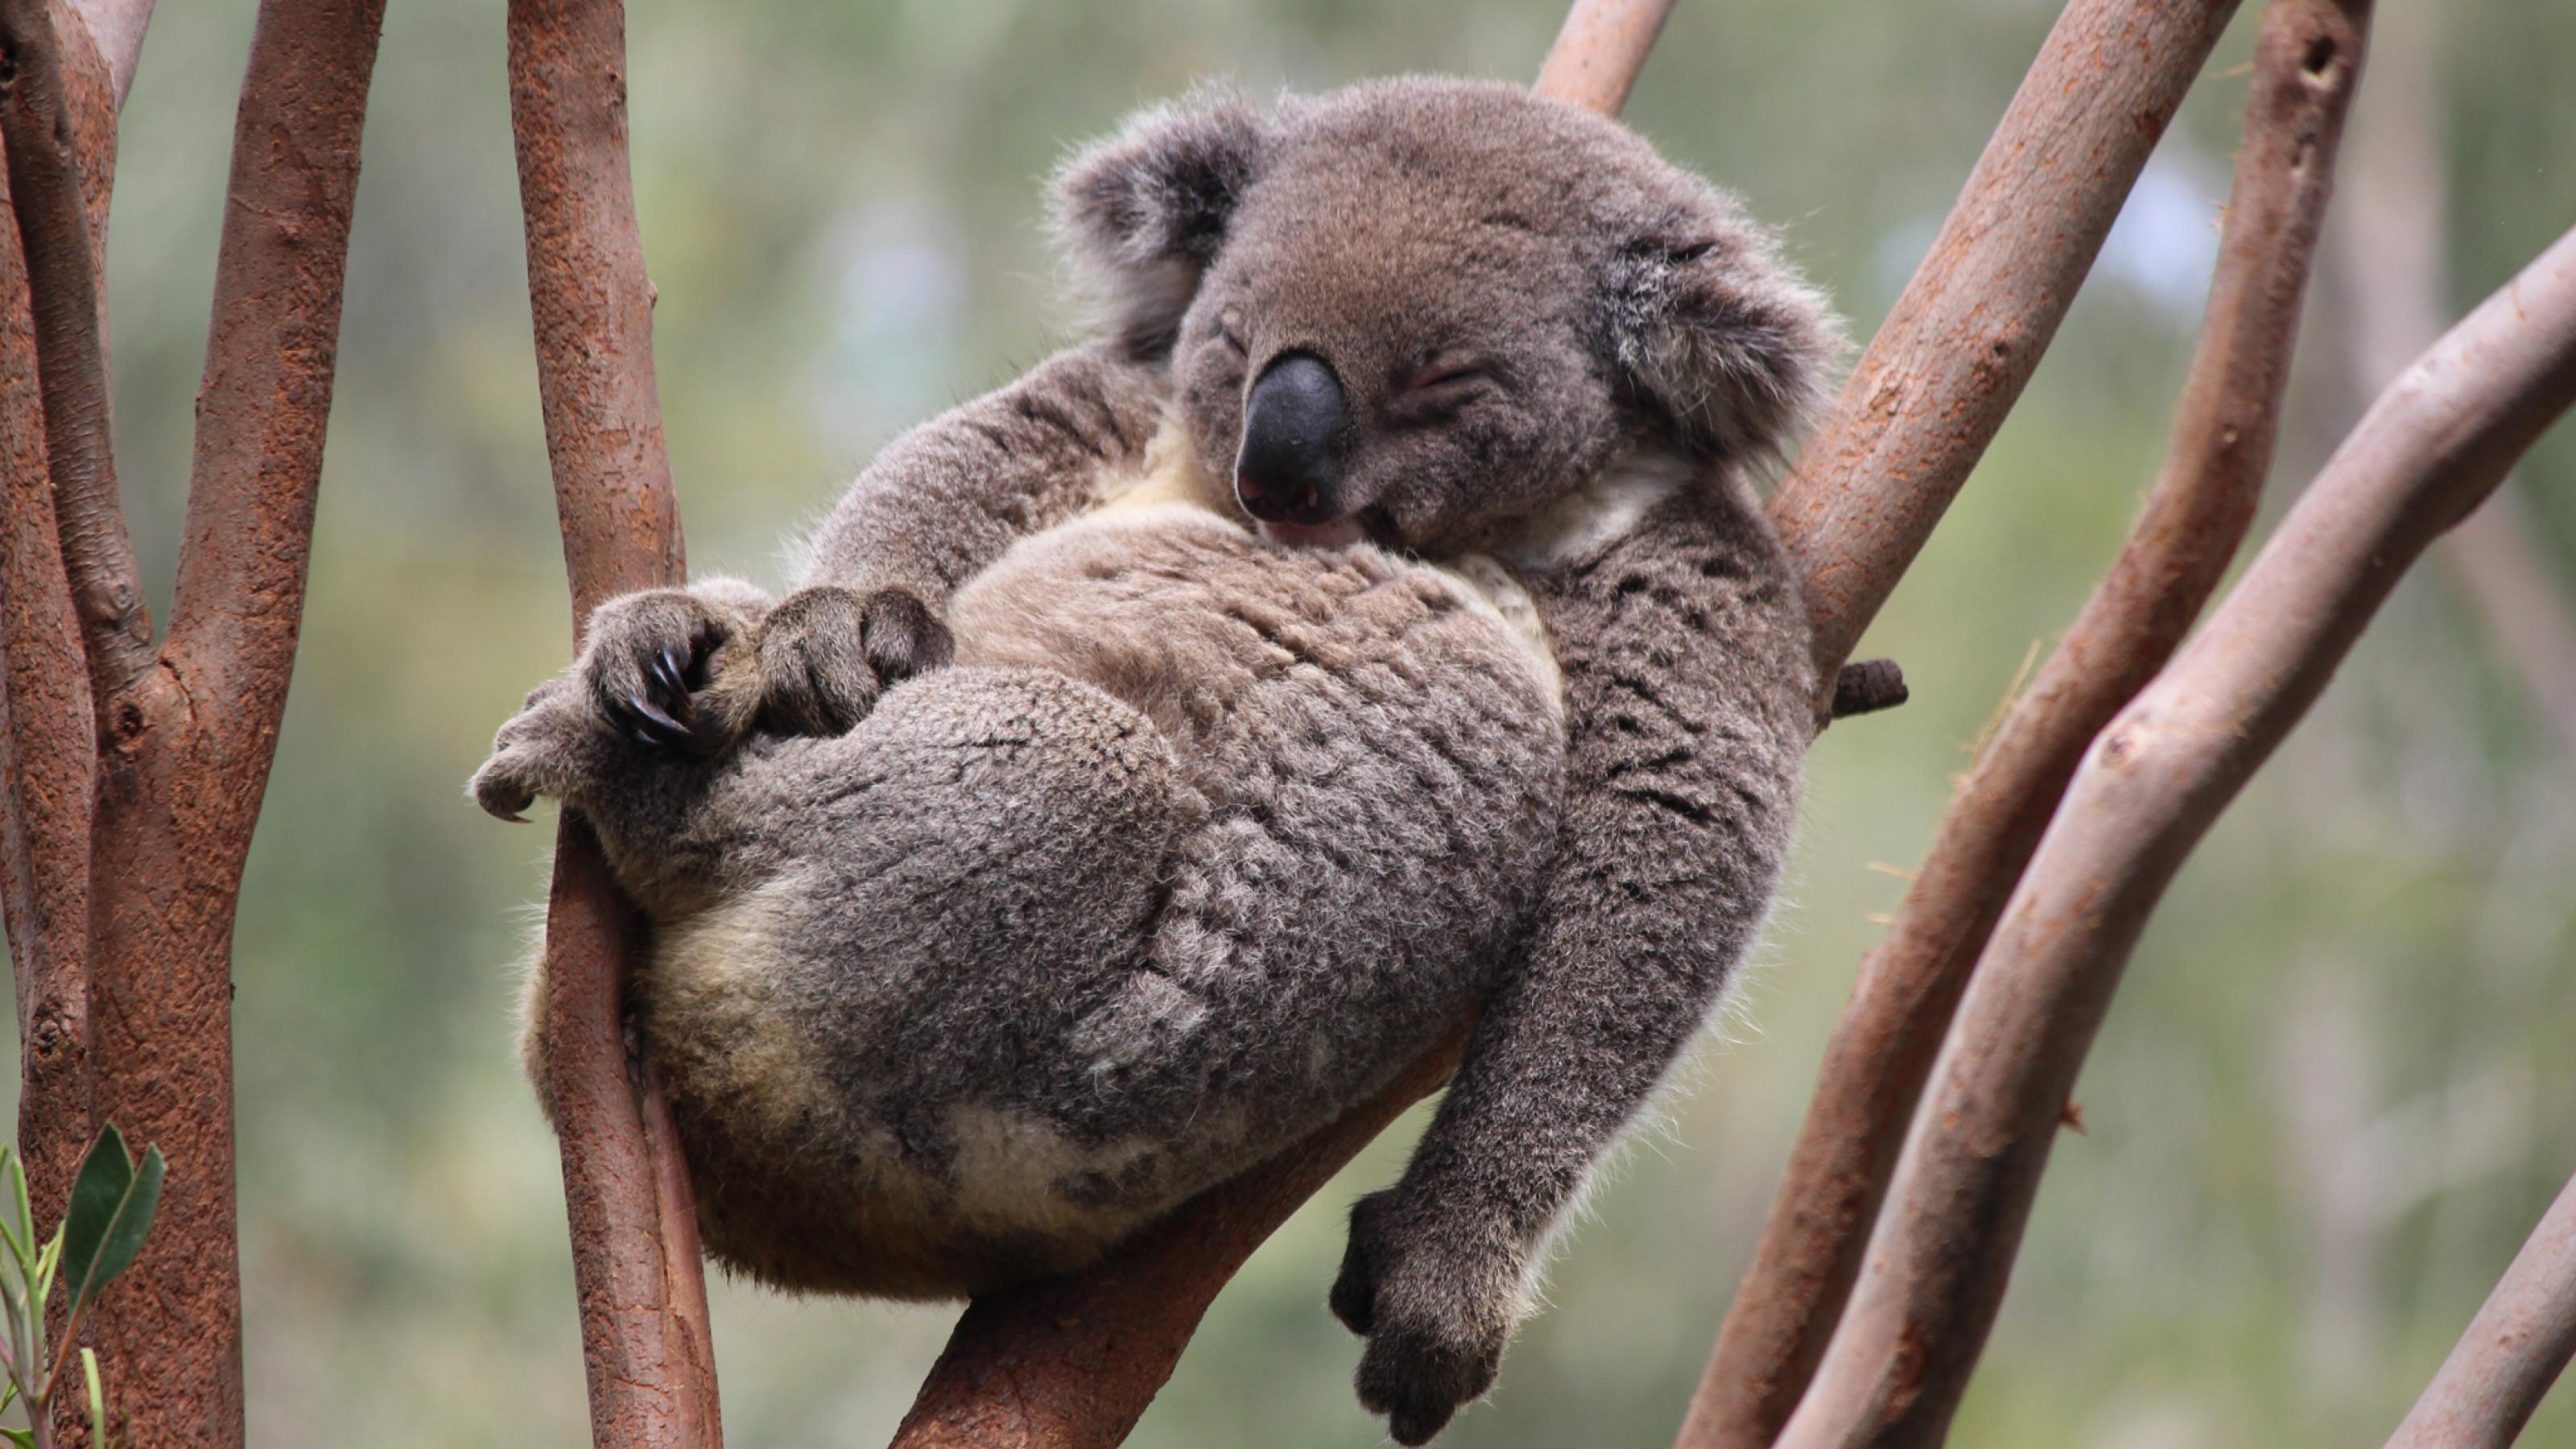 Auf den glatten, braunen Ästen eines Eukalyptus-Baumes hat es sich ein Koala – der einem Teddybären sehr ähnelt – gemütlich gemacht. Er hat braun-graues, dichtes Fell und eine dicke schwarzglänzende Nase, ruht mit geschlossenen Augen, den Rücken an die Äste gelehnt. Die Beine sind angezogen wie bei einem Baby, der rechte Arm ruht auf dem Bauch, der linke hängt schlaff herunter.